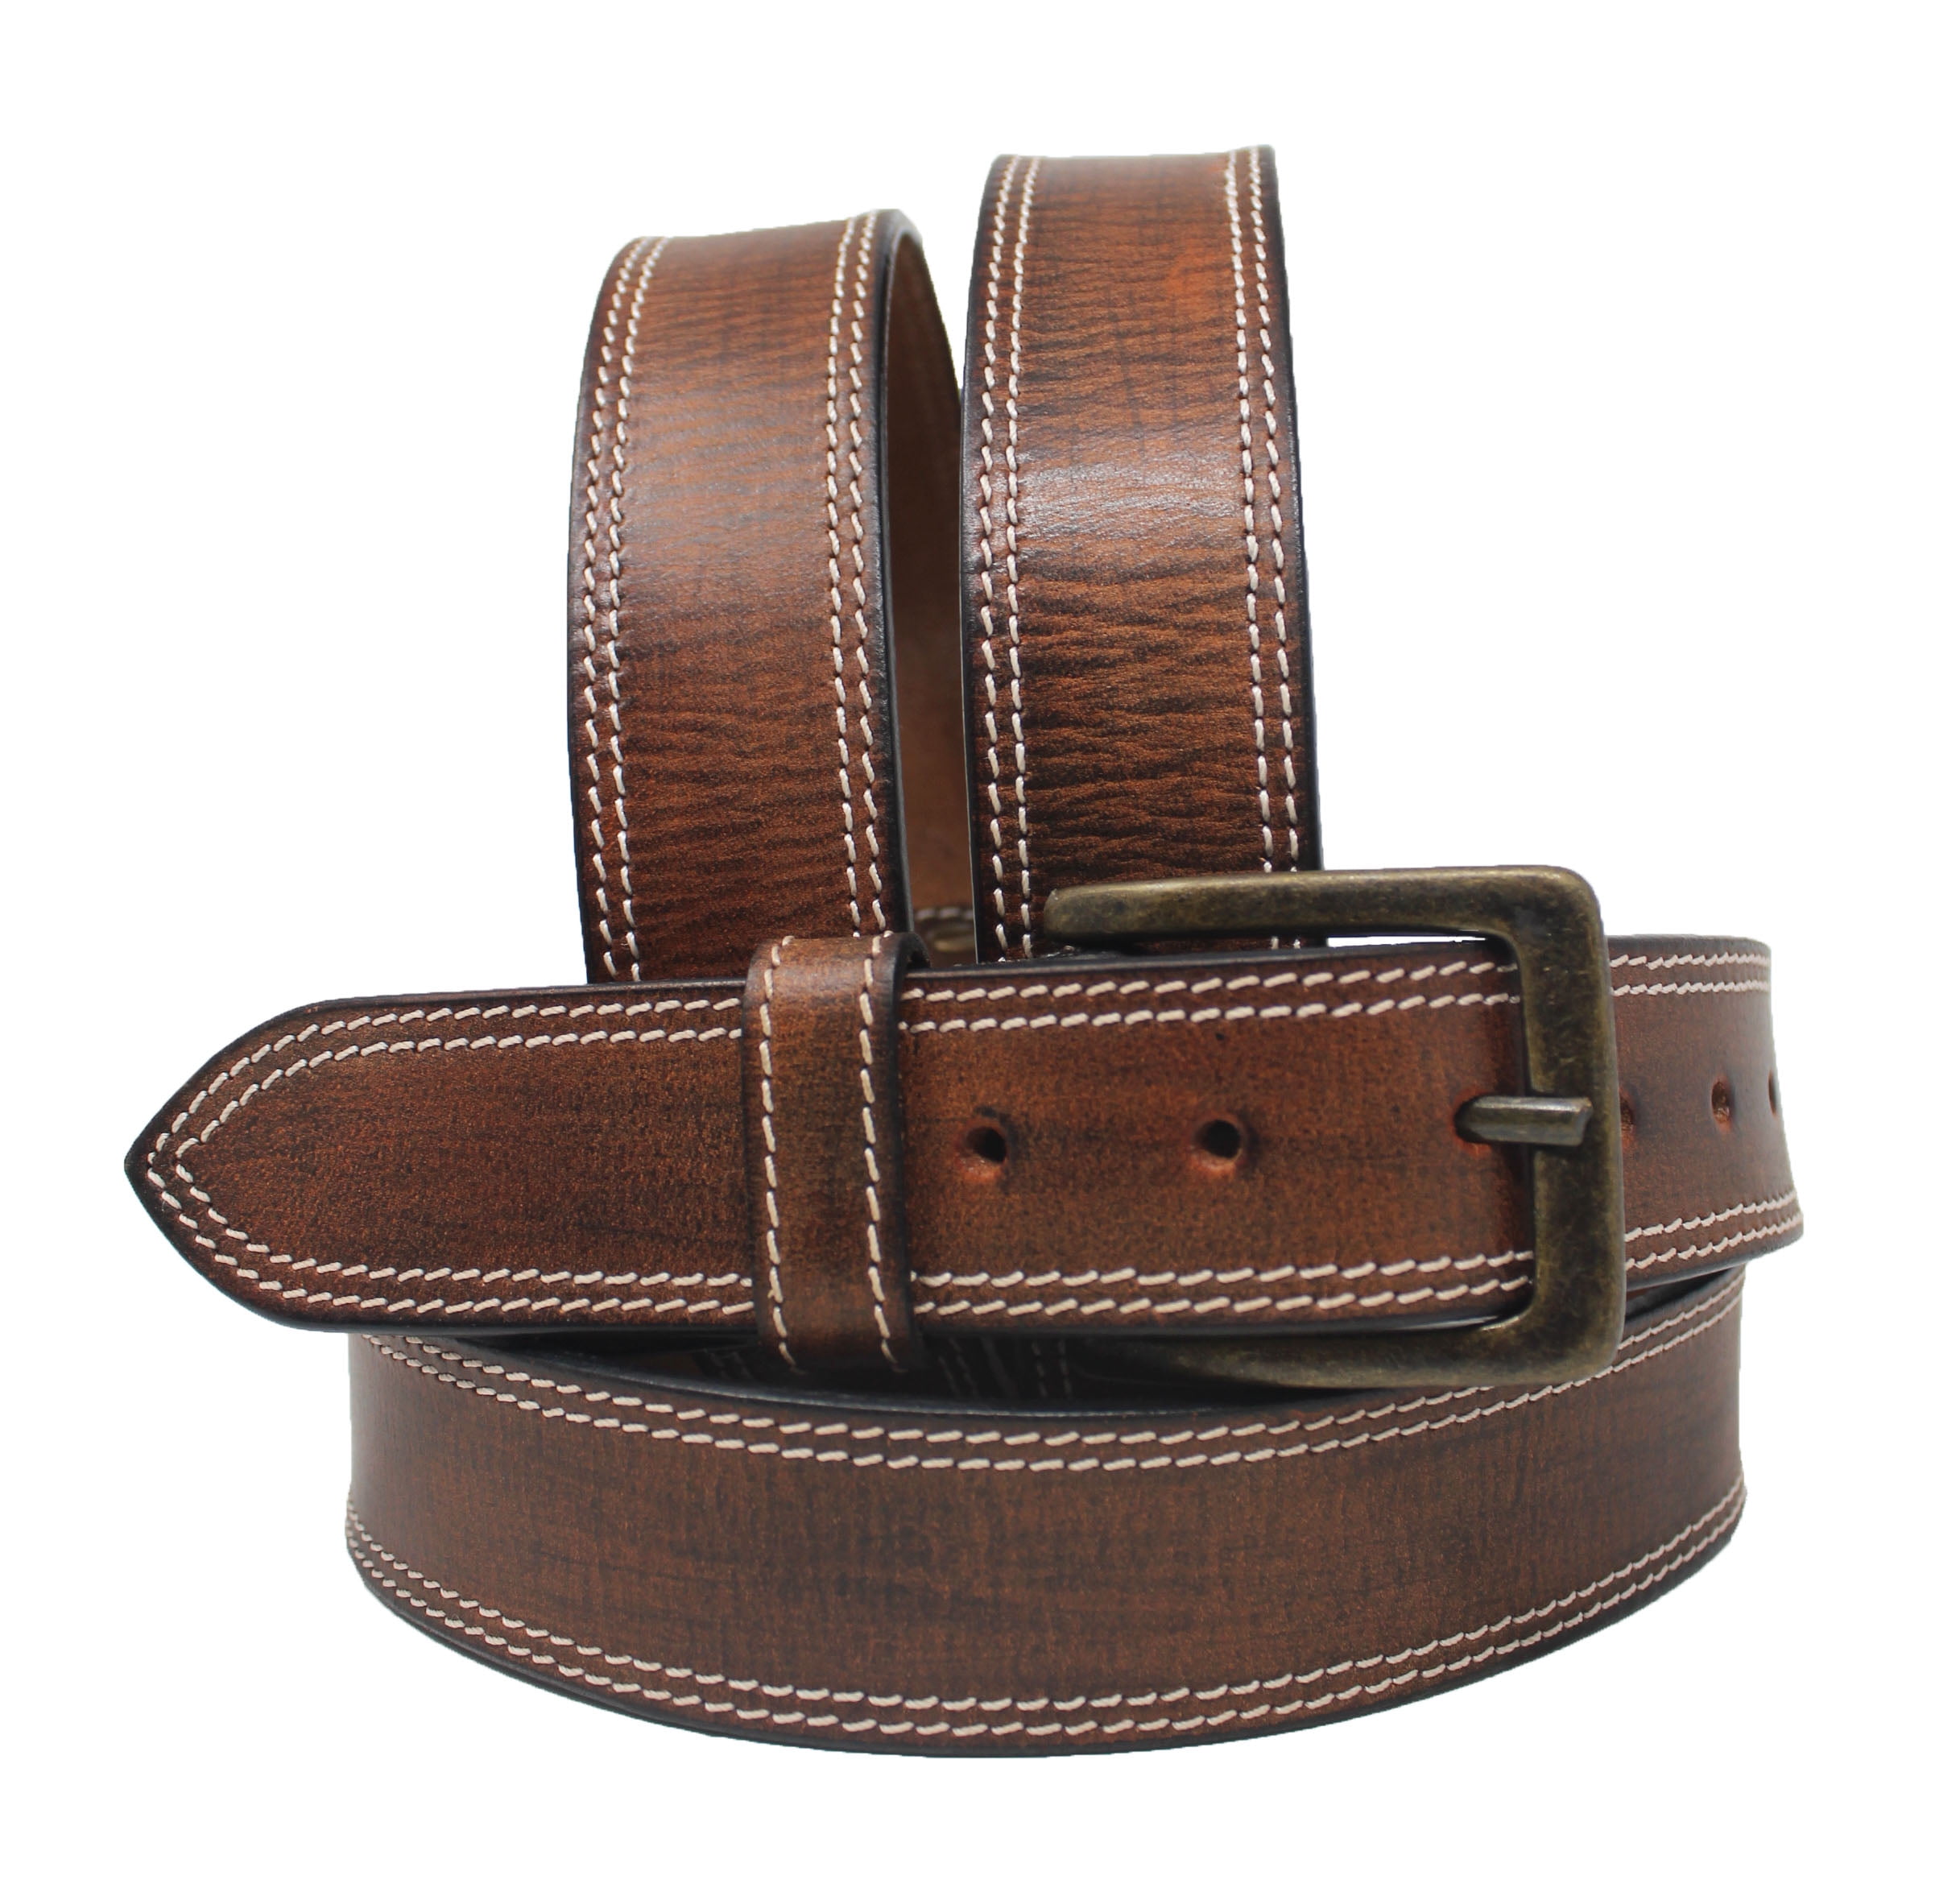 CHAOREN Men's Reversible Casual Belt - 2-in-1 Brown Belt, 1 1/2